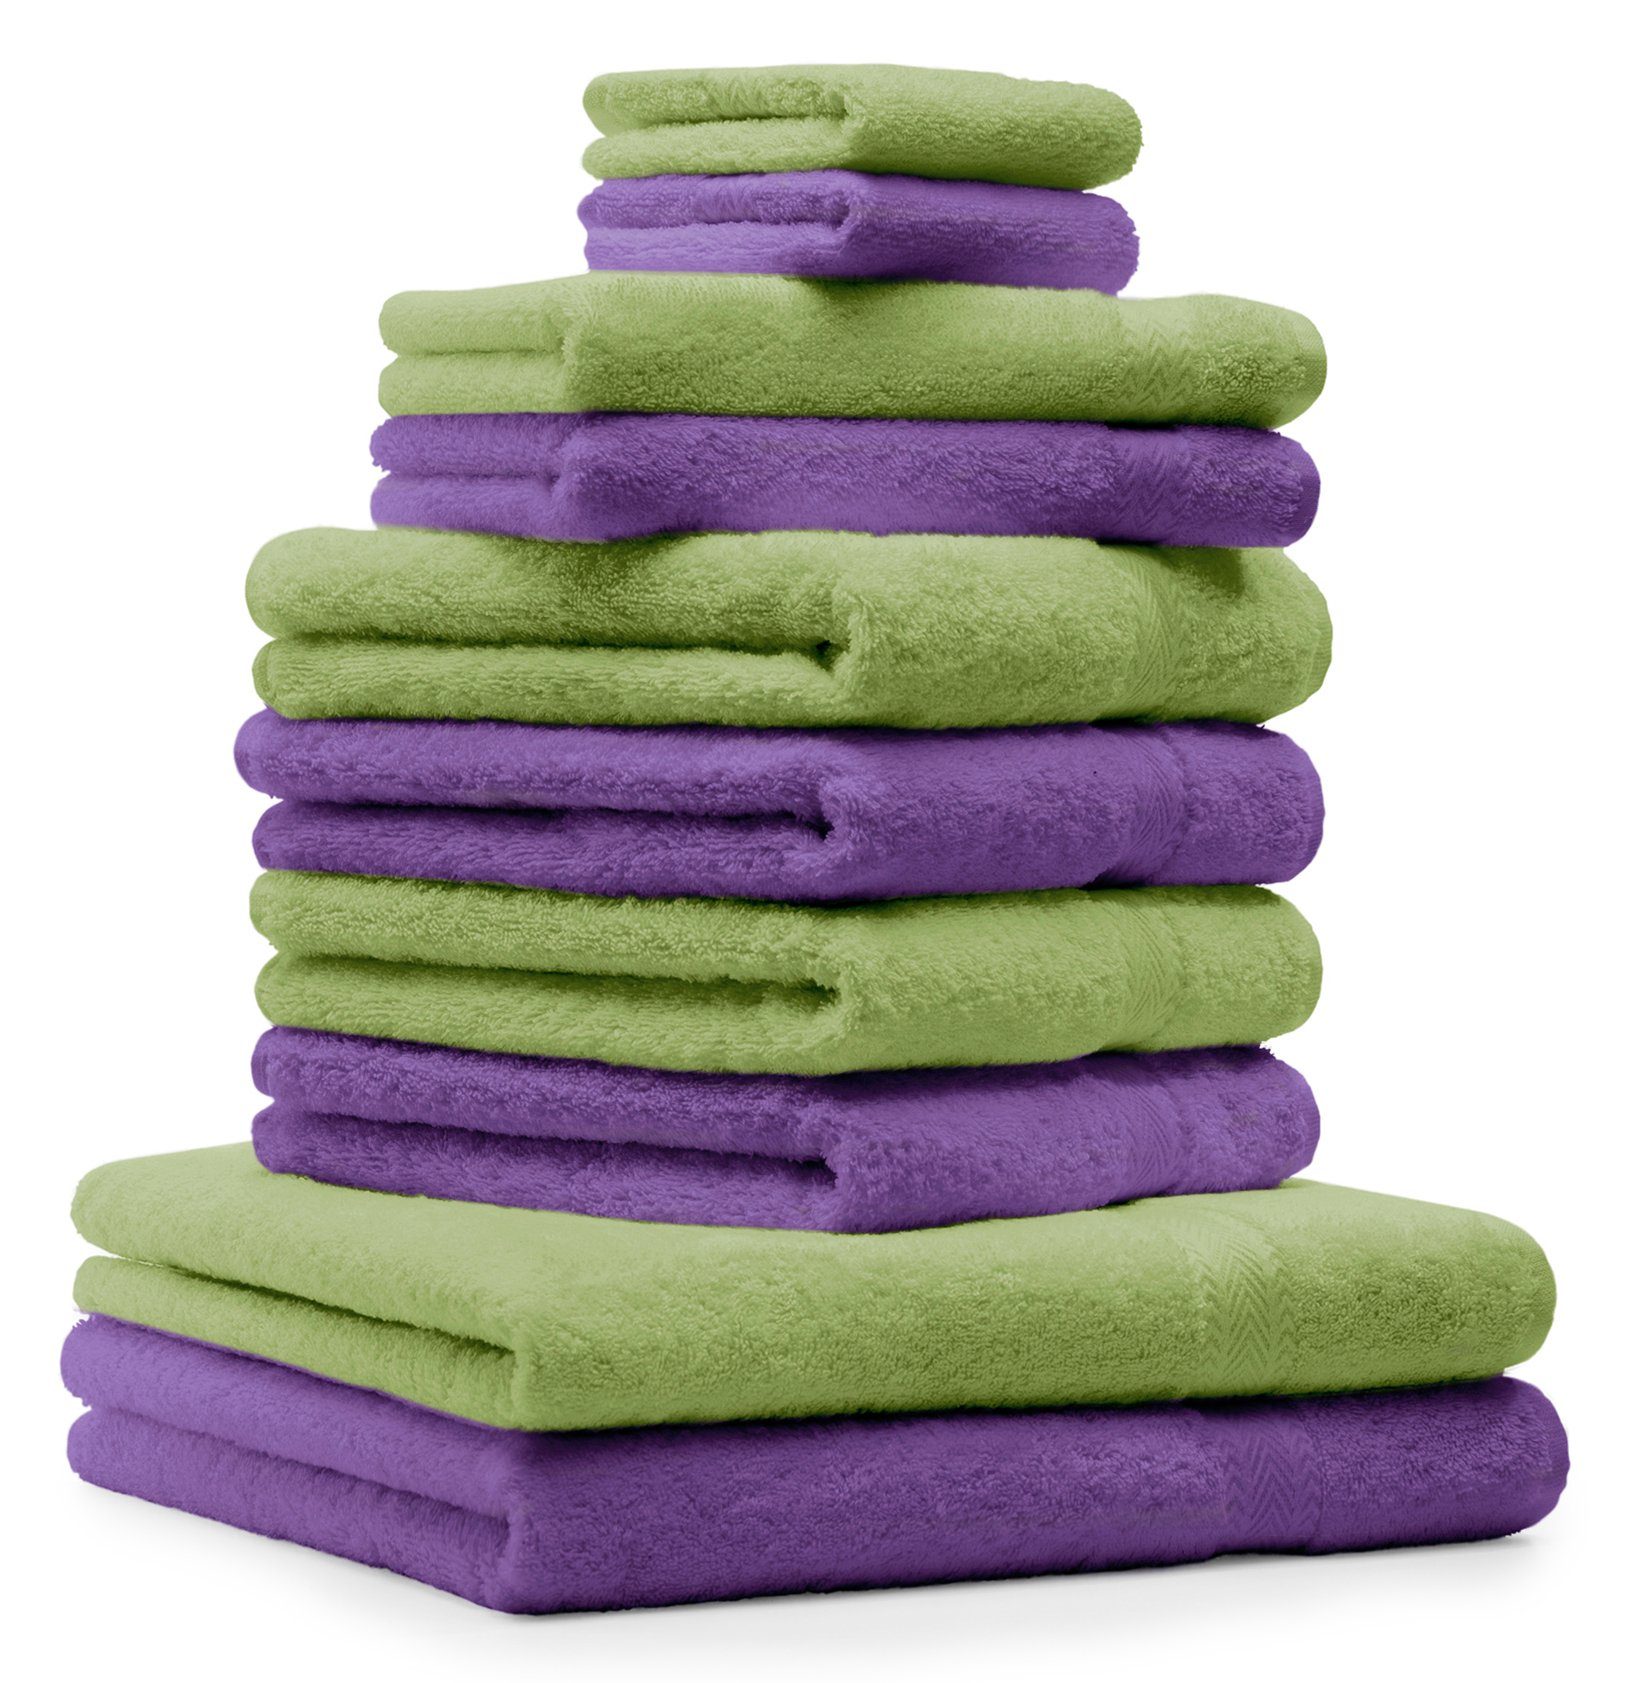 Betz Handtuch Set 10-TLG. Handtücher-Set Classic Farbe apfelgrün und lila, 100% Baumwolle | Handtuch-Sets